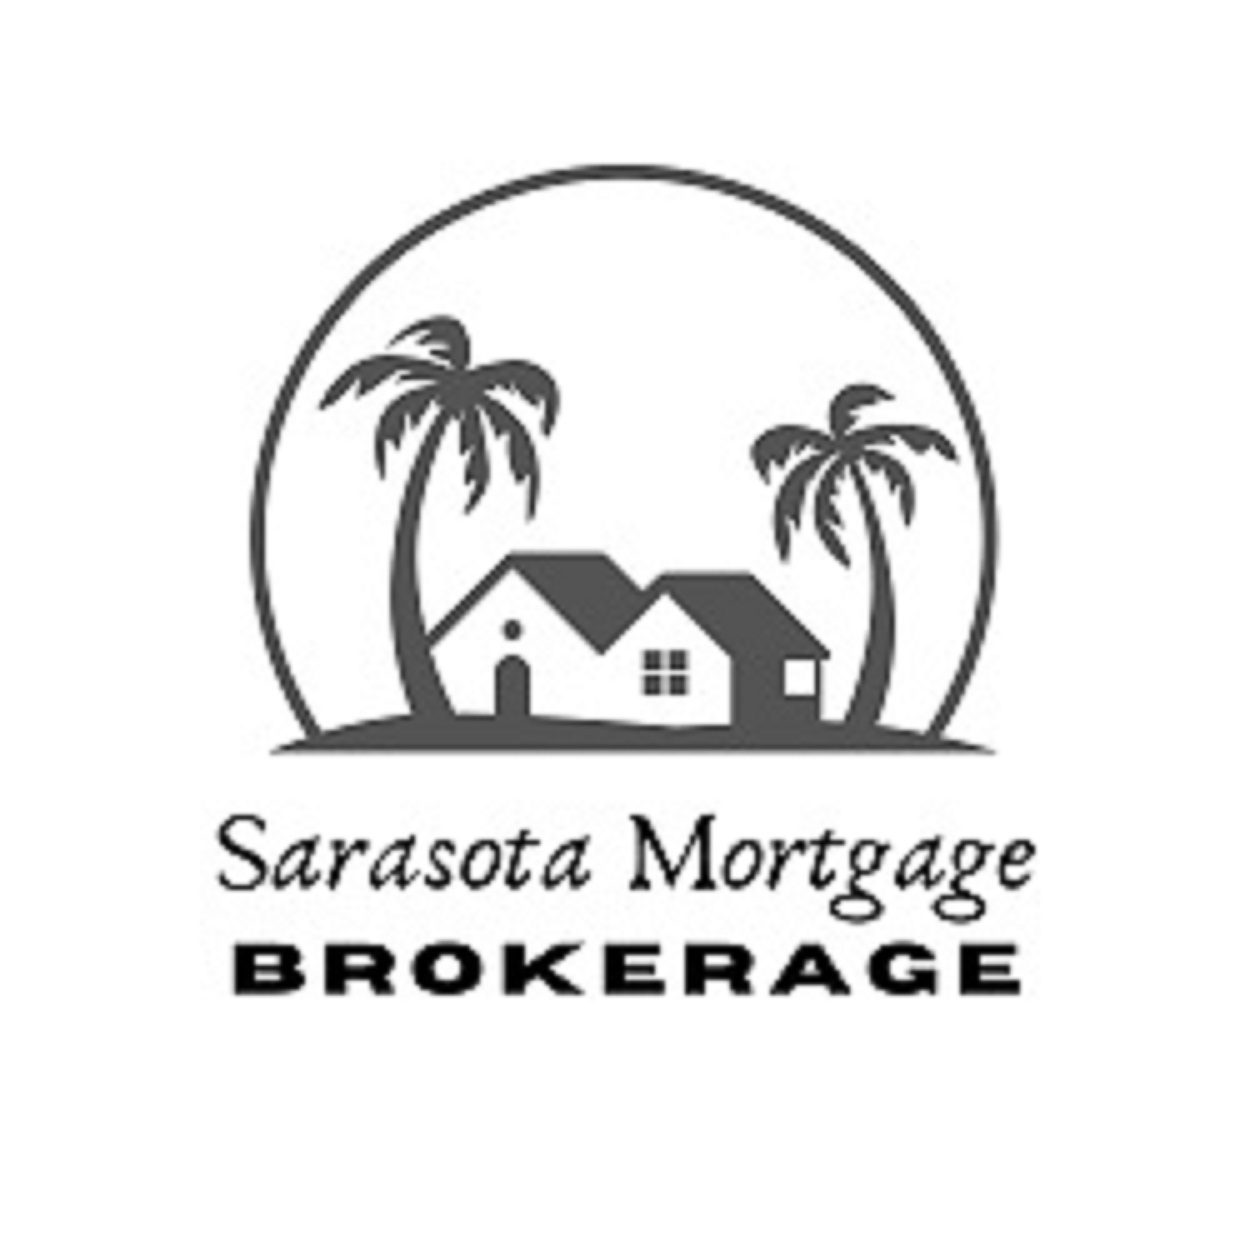 Sarasota Mortgage Brokerage